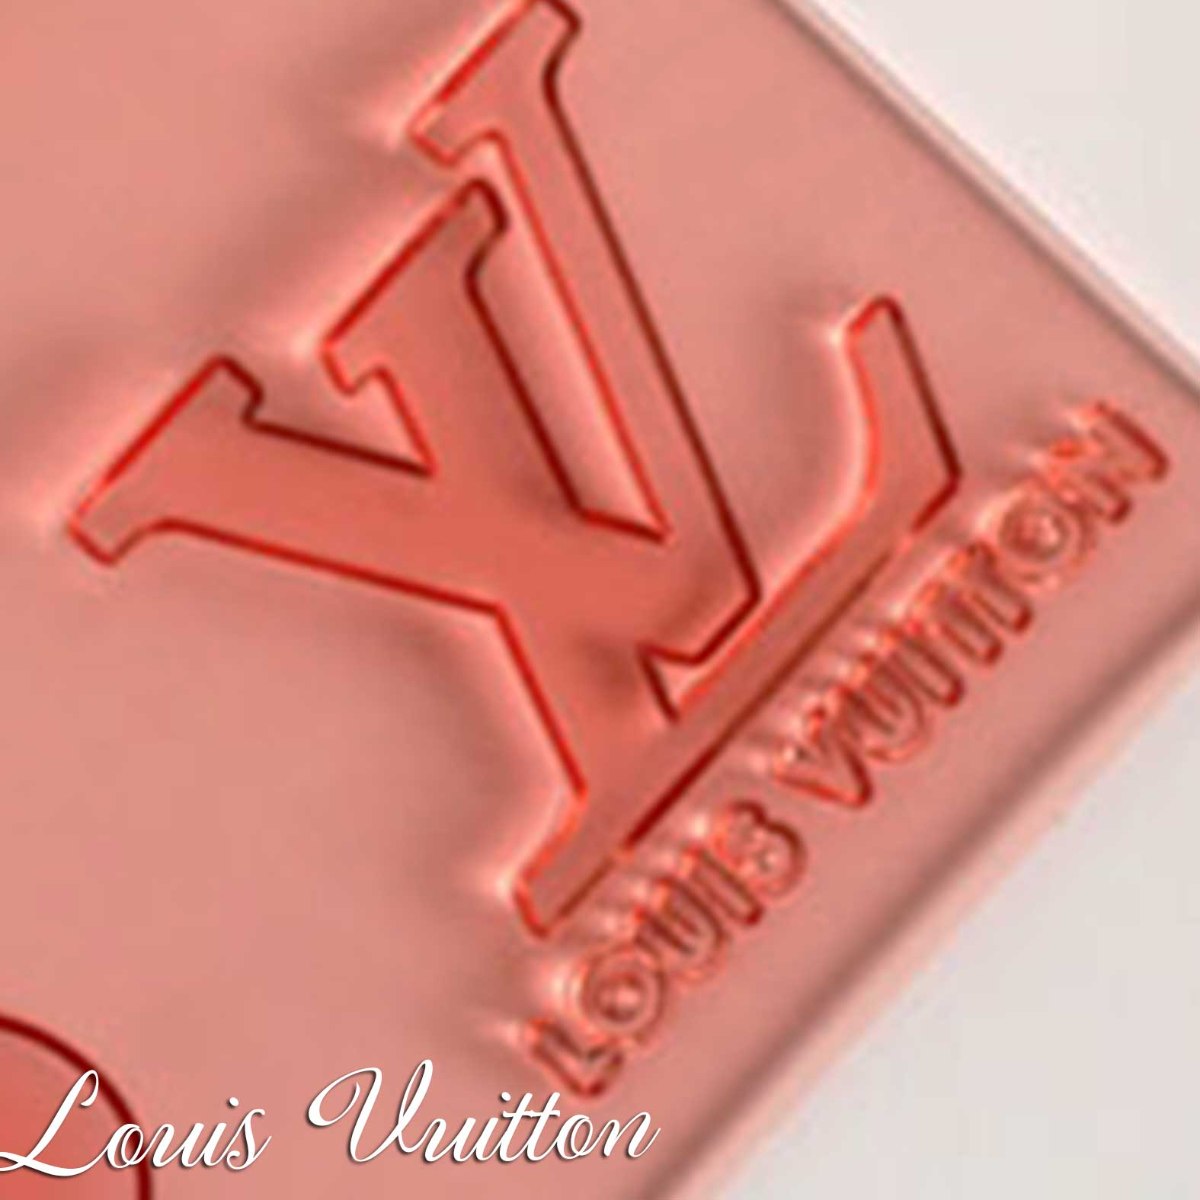 LOUIS VUITTON LV World Tour Stamp Printed For White 1A61G - KICKS CREW